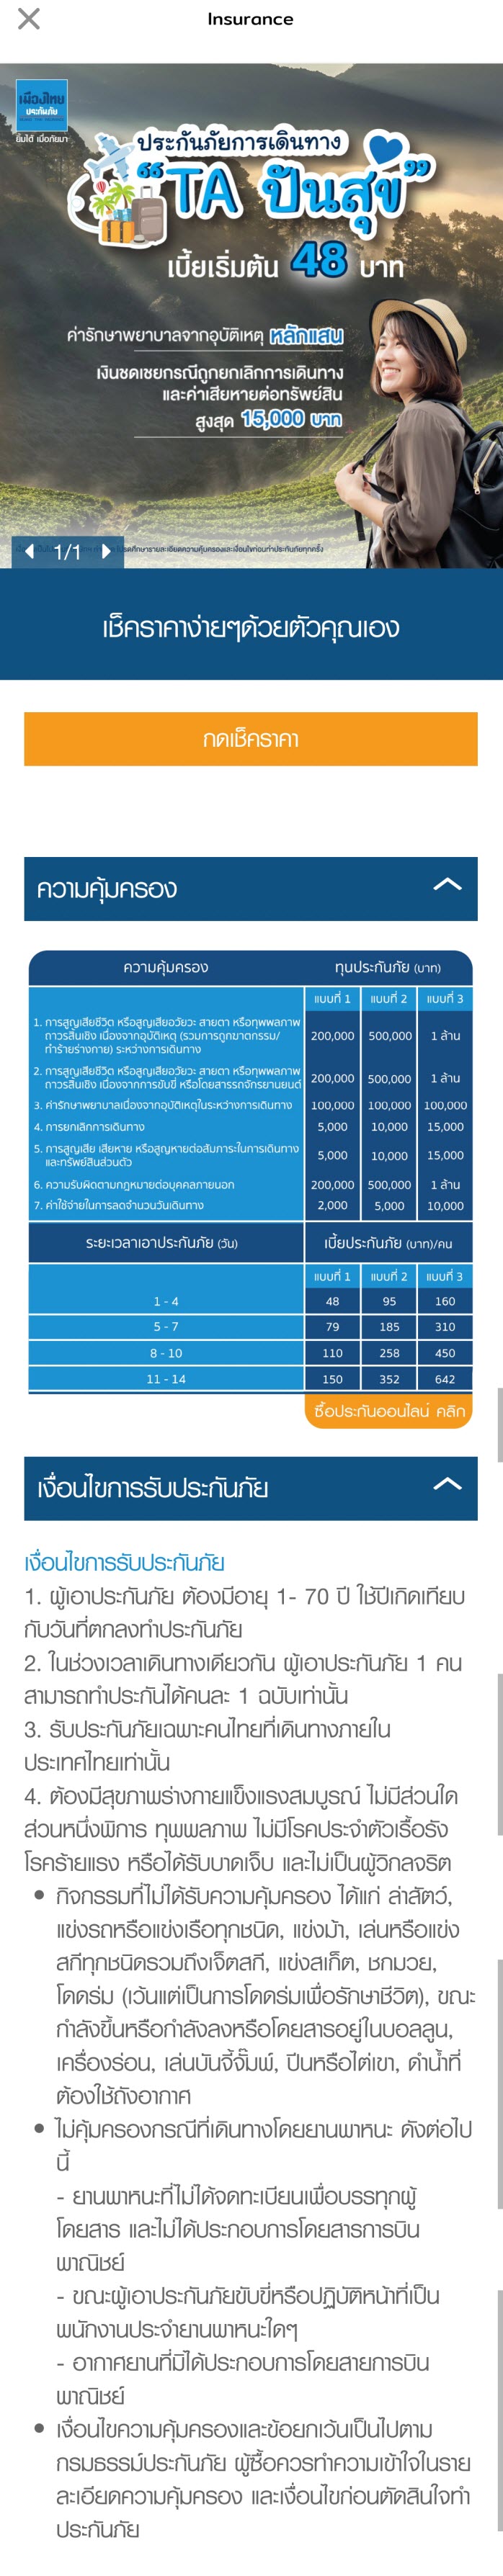 описание туристической страховки от Muang Thai Insurance на тайском языке